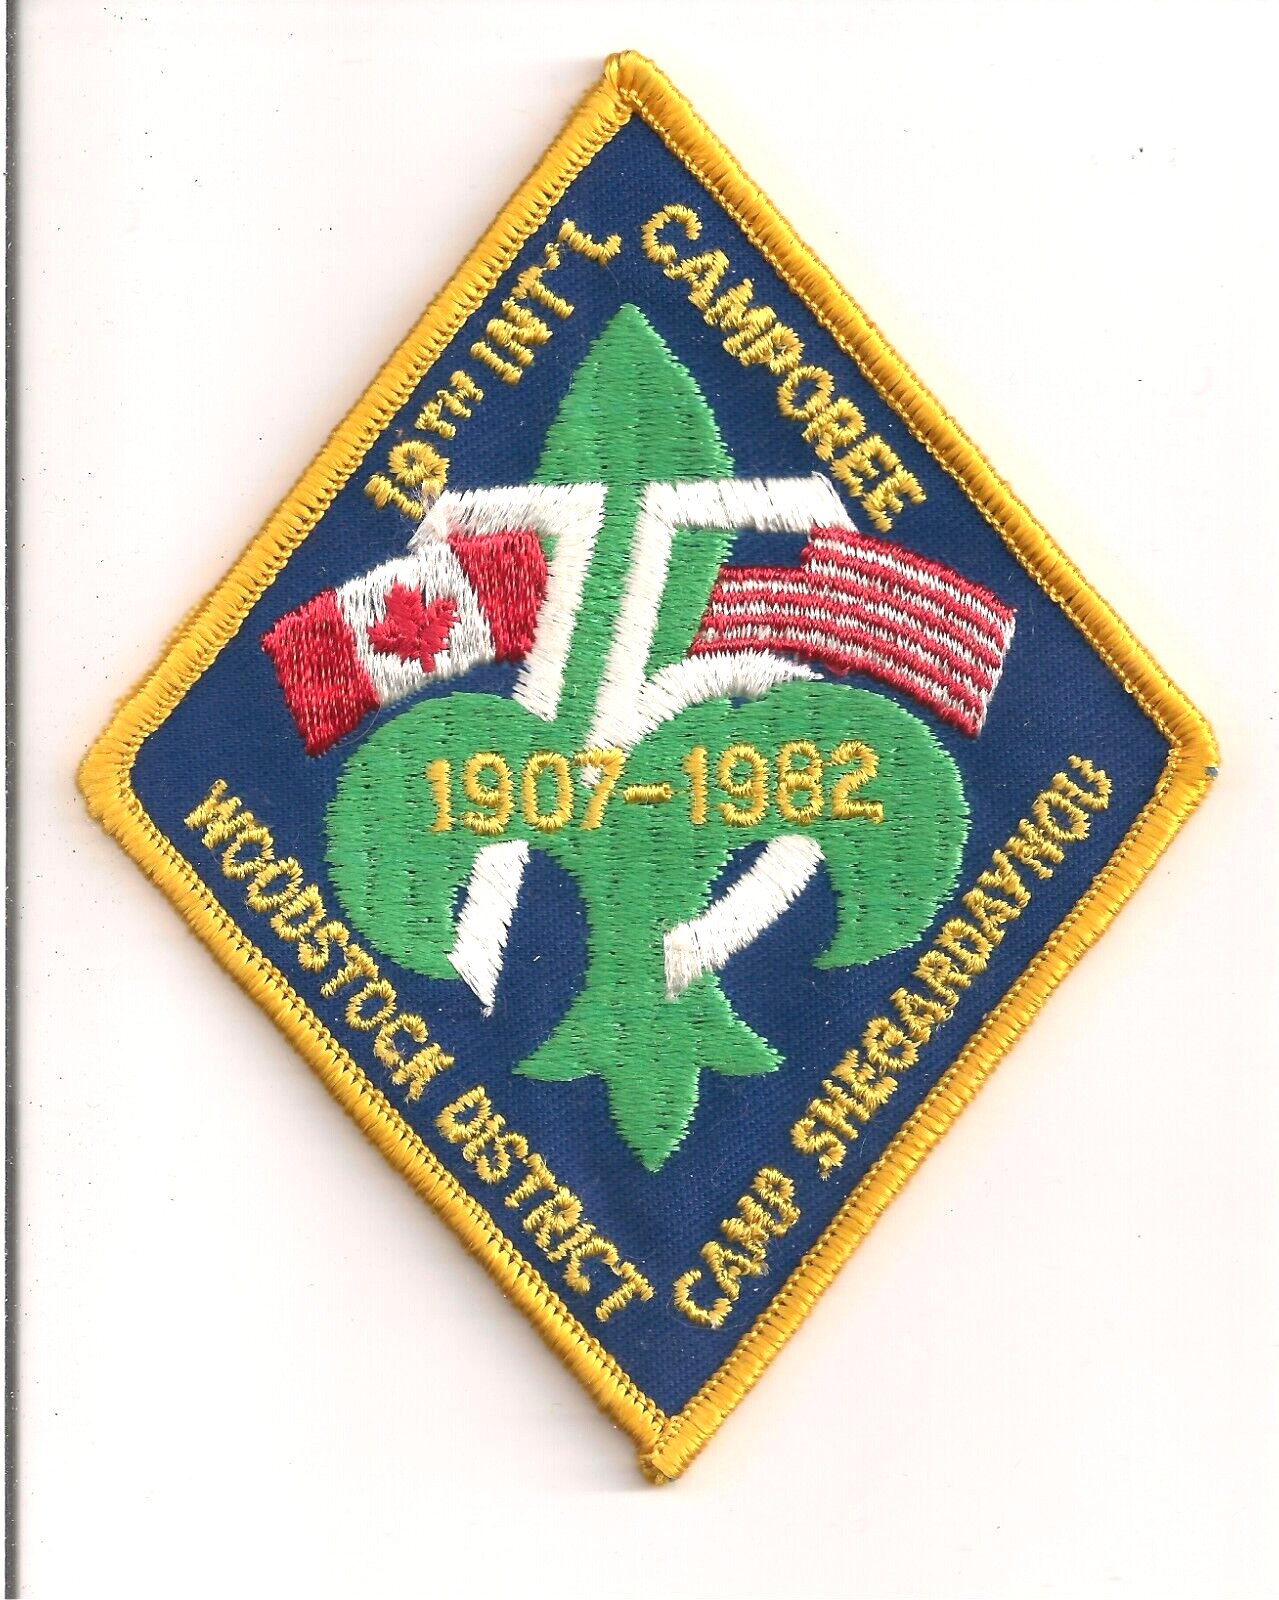 19TH INTERNATIONAL CAMPOREE 1982 CAMP SHEGARDAYNOU  USA / CANADA CAMPOREE